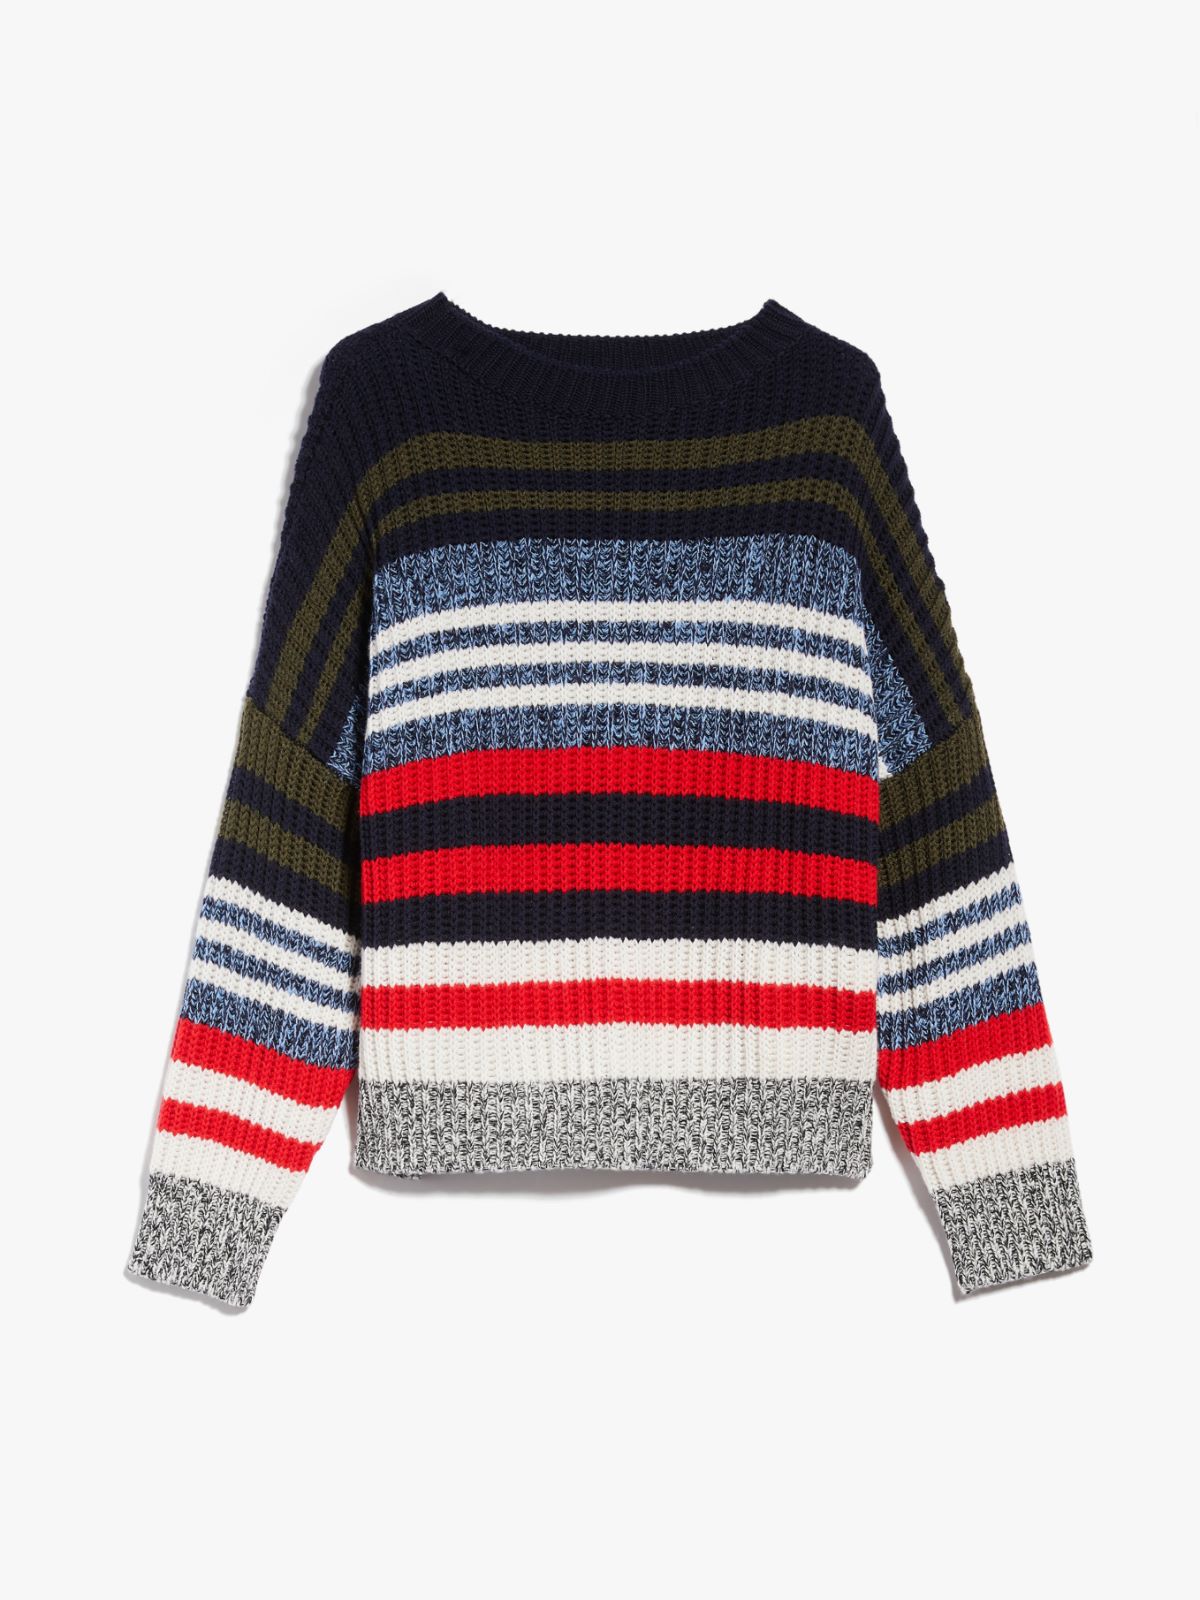 Wool yarn sweater - NAVY - Weekend Max Mara - 6